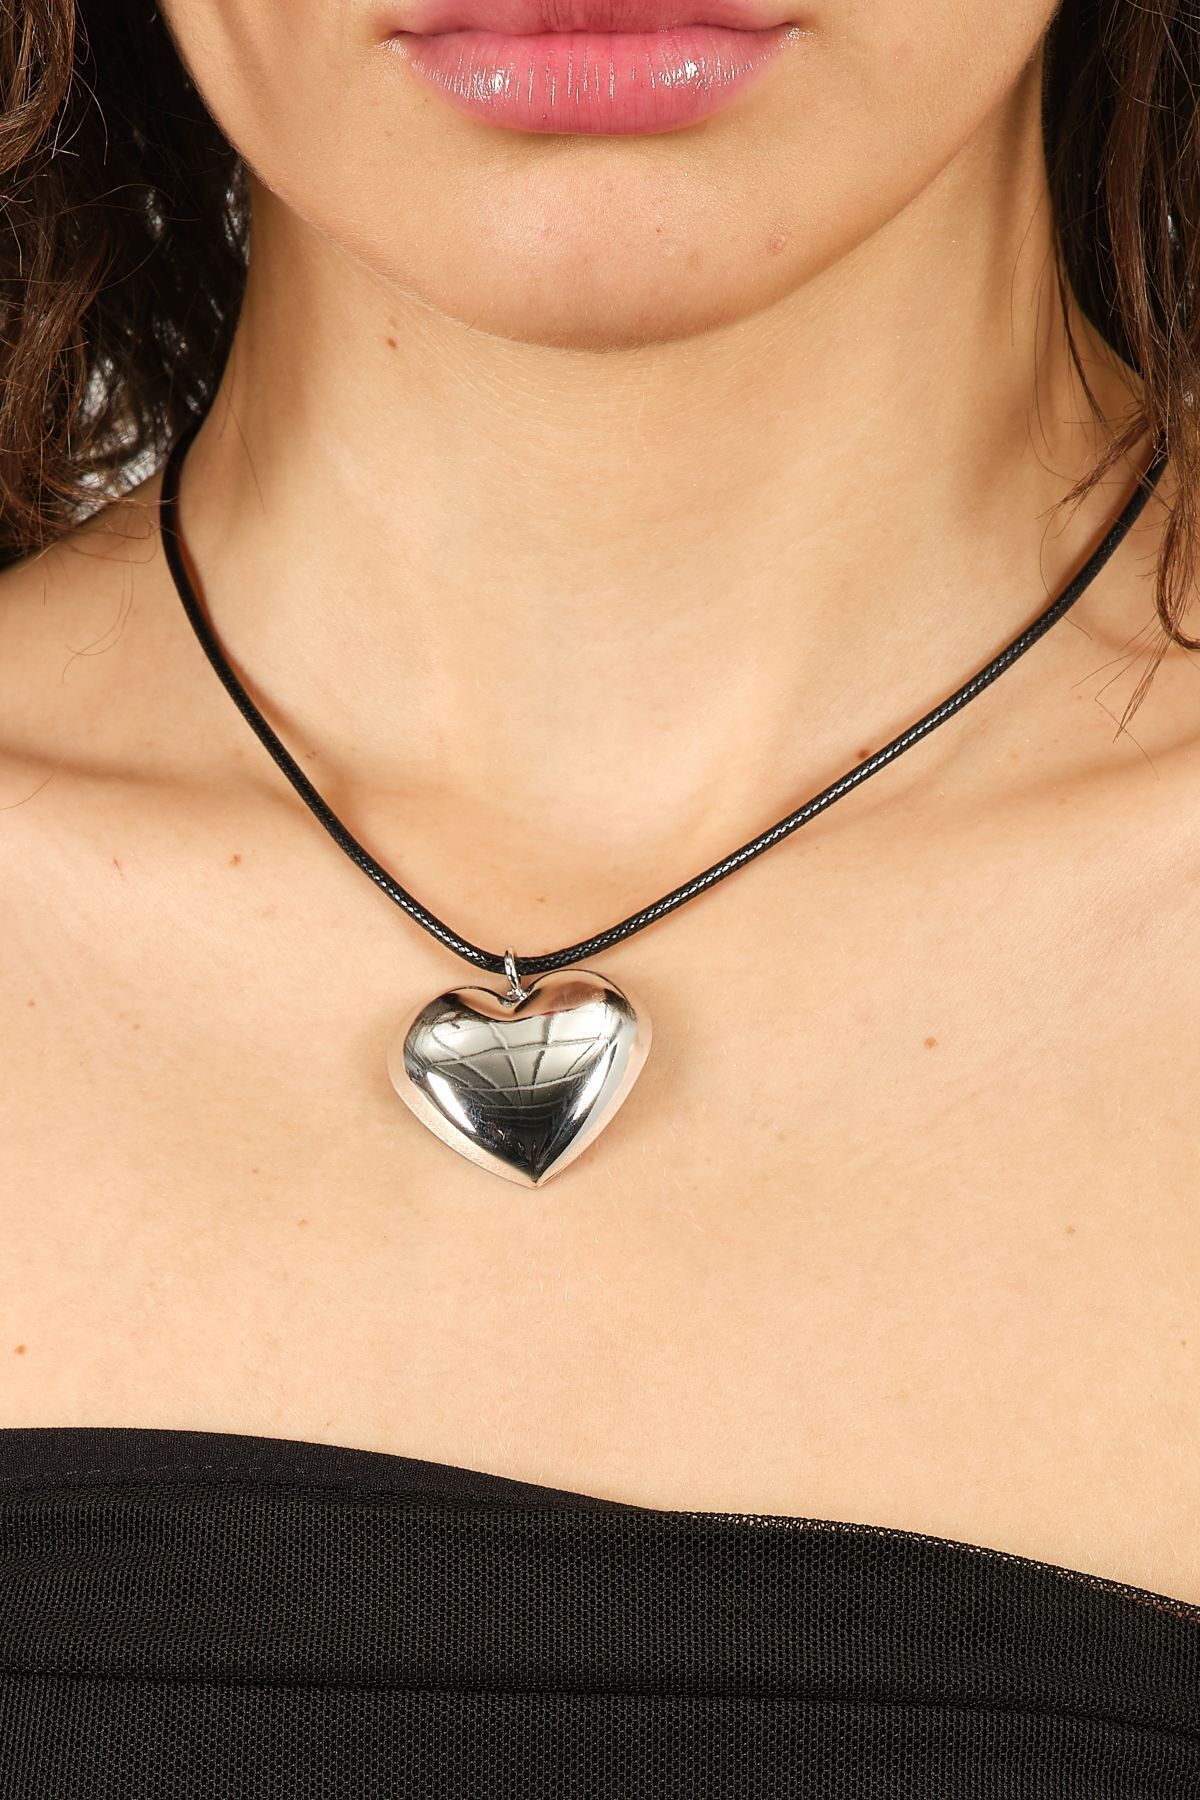 Domoda Gümüş Ayarlanabilir Siyah Wax Ipli Ve Parıltılı Metal Kalp Kadın Bijuteri Kolye